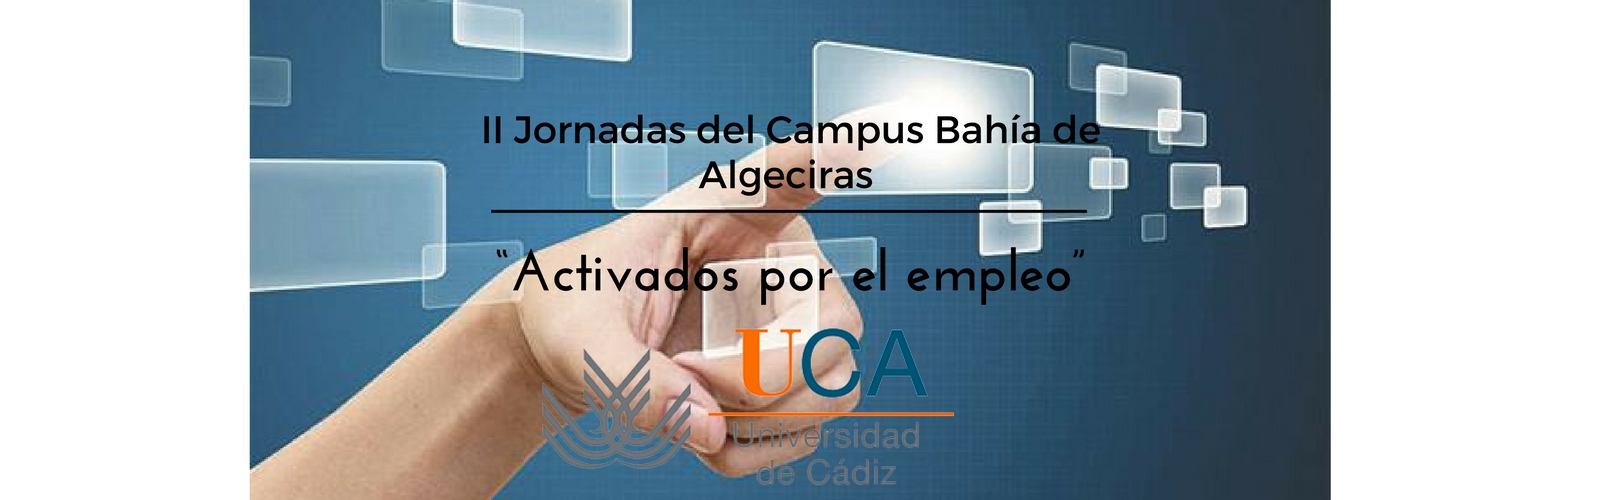 II Jornadas del Campus Bahía de Algeciras “Activados por el empleo”